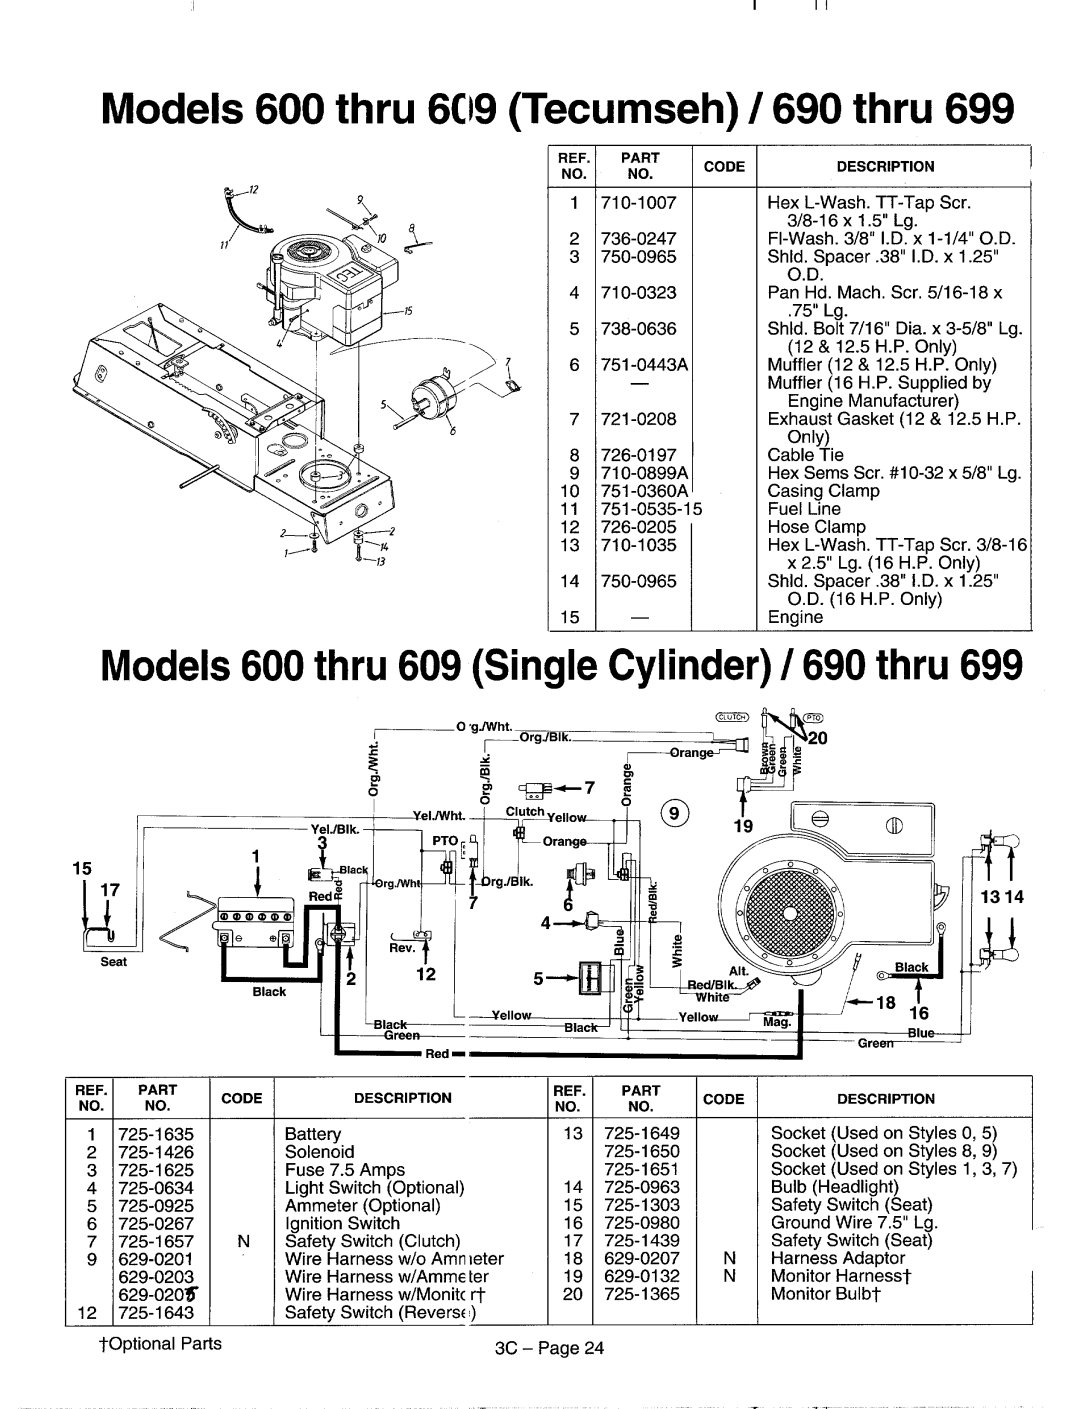 MTD 600-609, 690-699 manual 